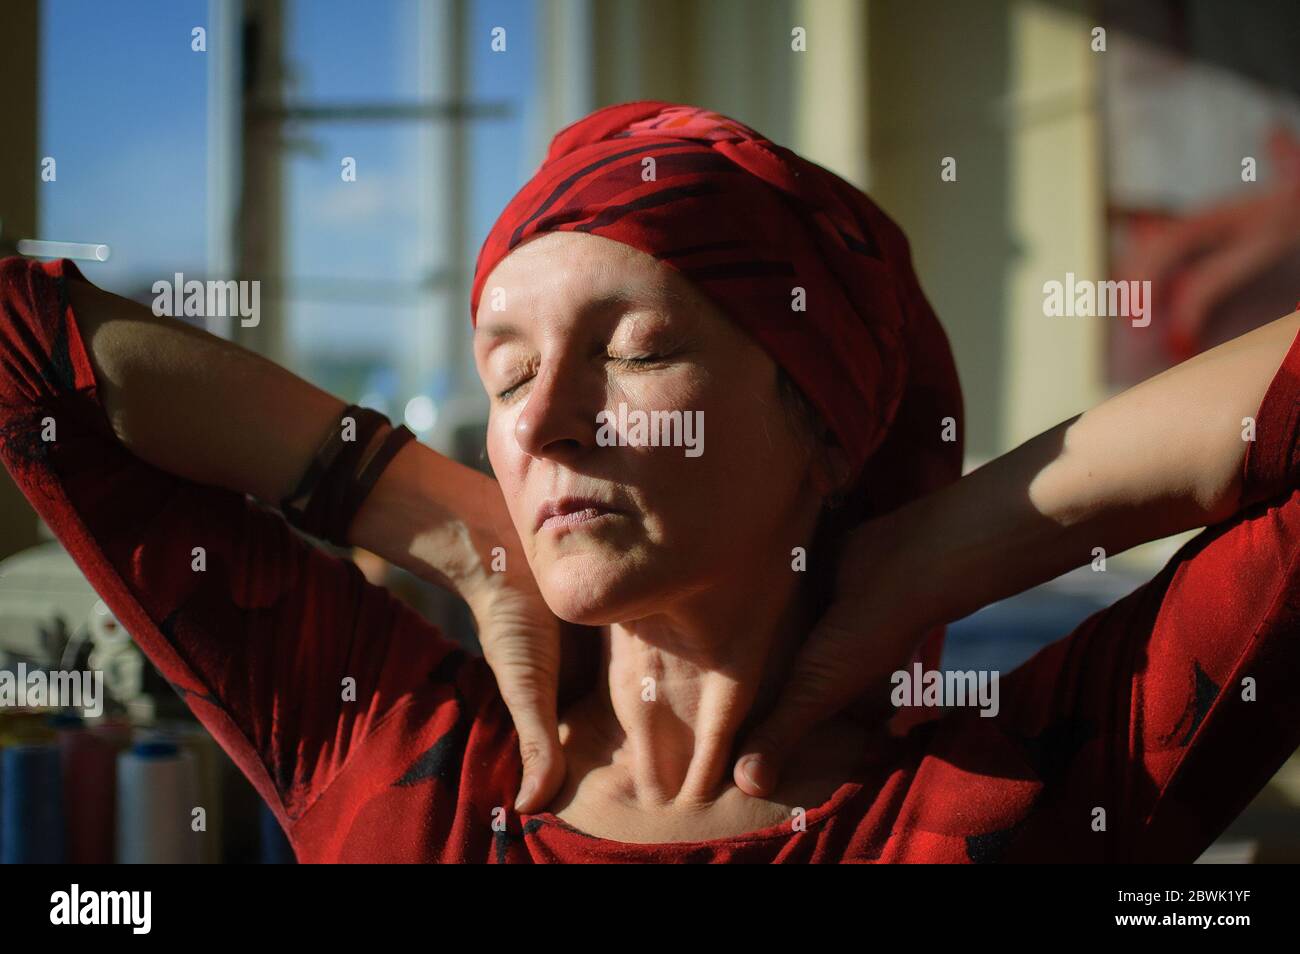 Retrato femenino de mujer madura vestida de ropa roja y sentada al final de su jornada de trabajo en la máquina de coser y el fondo de algodón bobbins Foto de stock